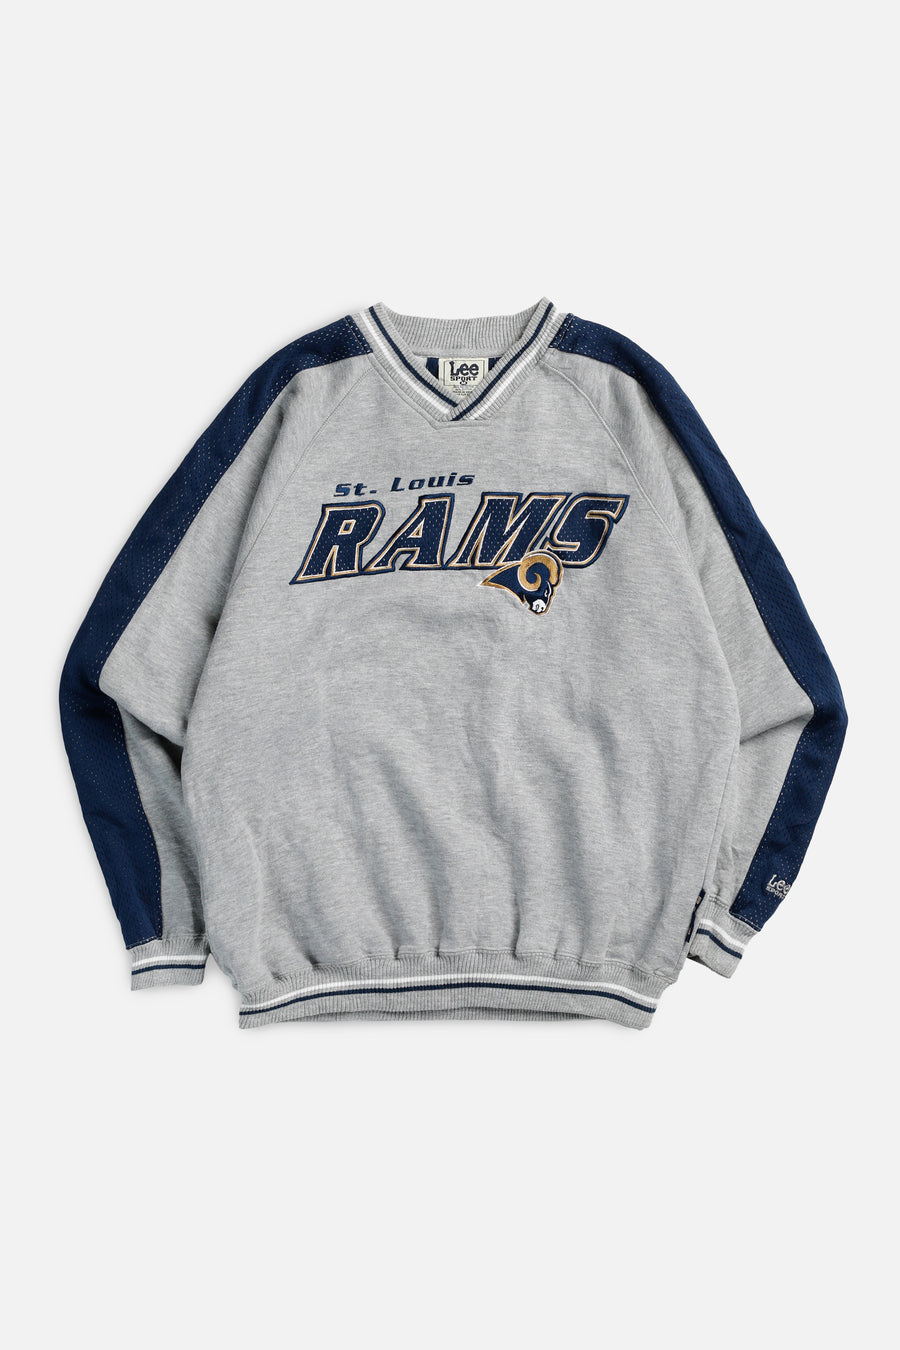 Vintage St. Louis Rams NFL Sweatshirt - M